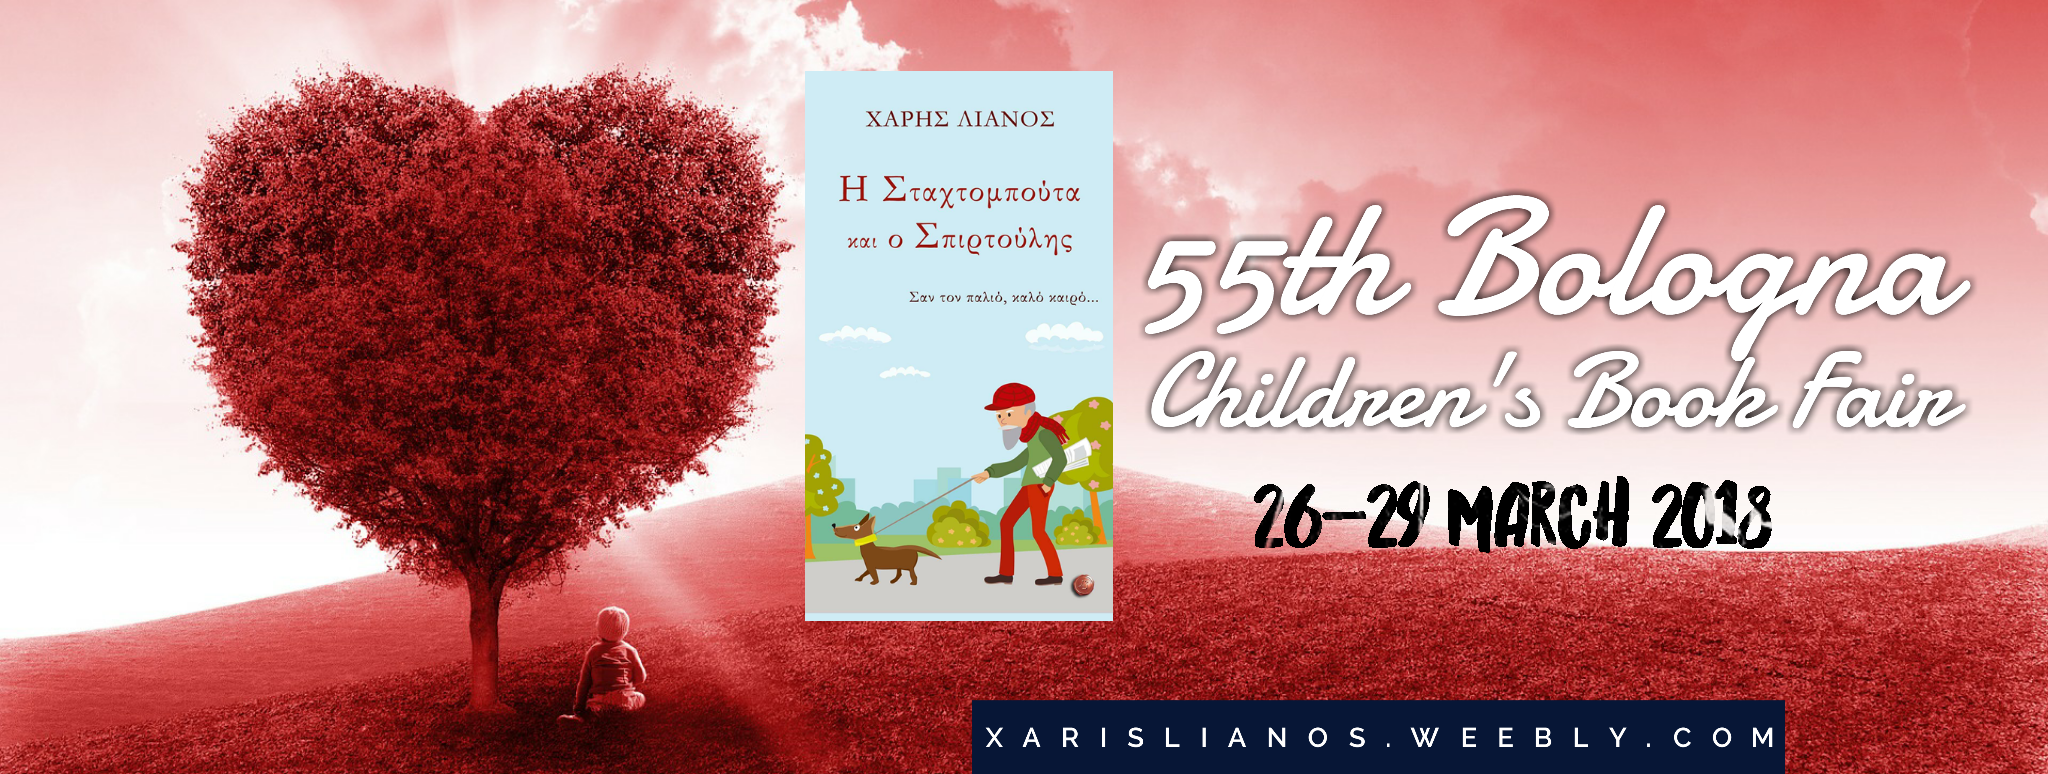 Bologna Children Book Fair 26-29 March 2018 Xaris Lianos